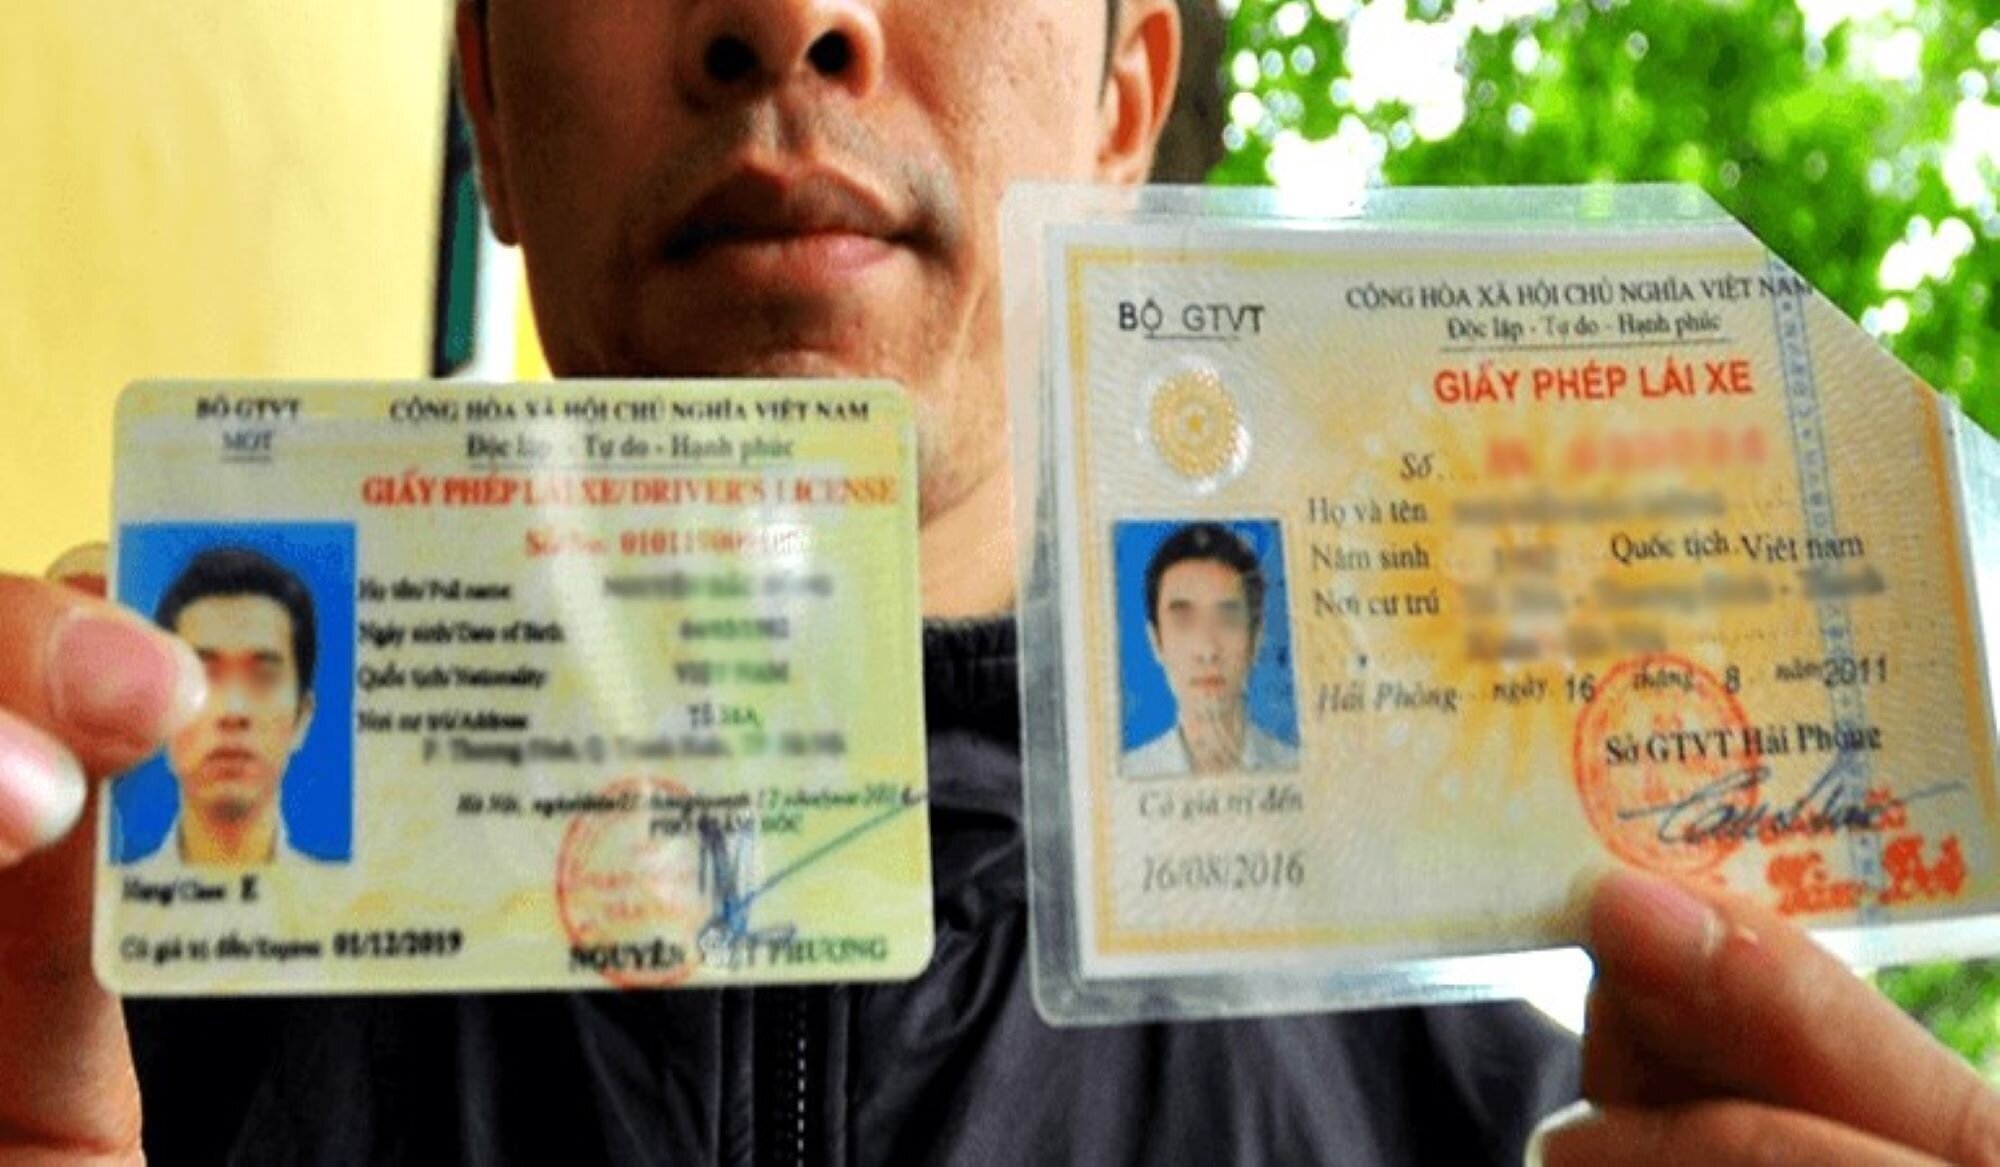 Pháp luật quy định cụ thể đối tượng được chuyển đổi giấy phép lái xe của nước ngoài sang Việt Nam. (Ảnh: D.Đ)